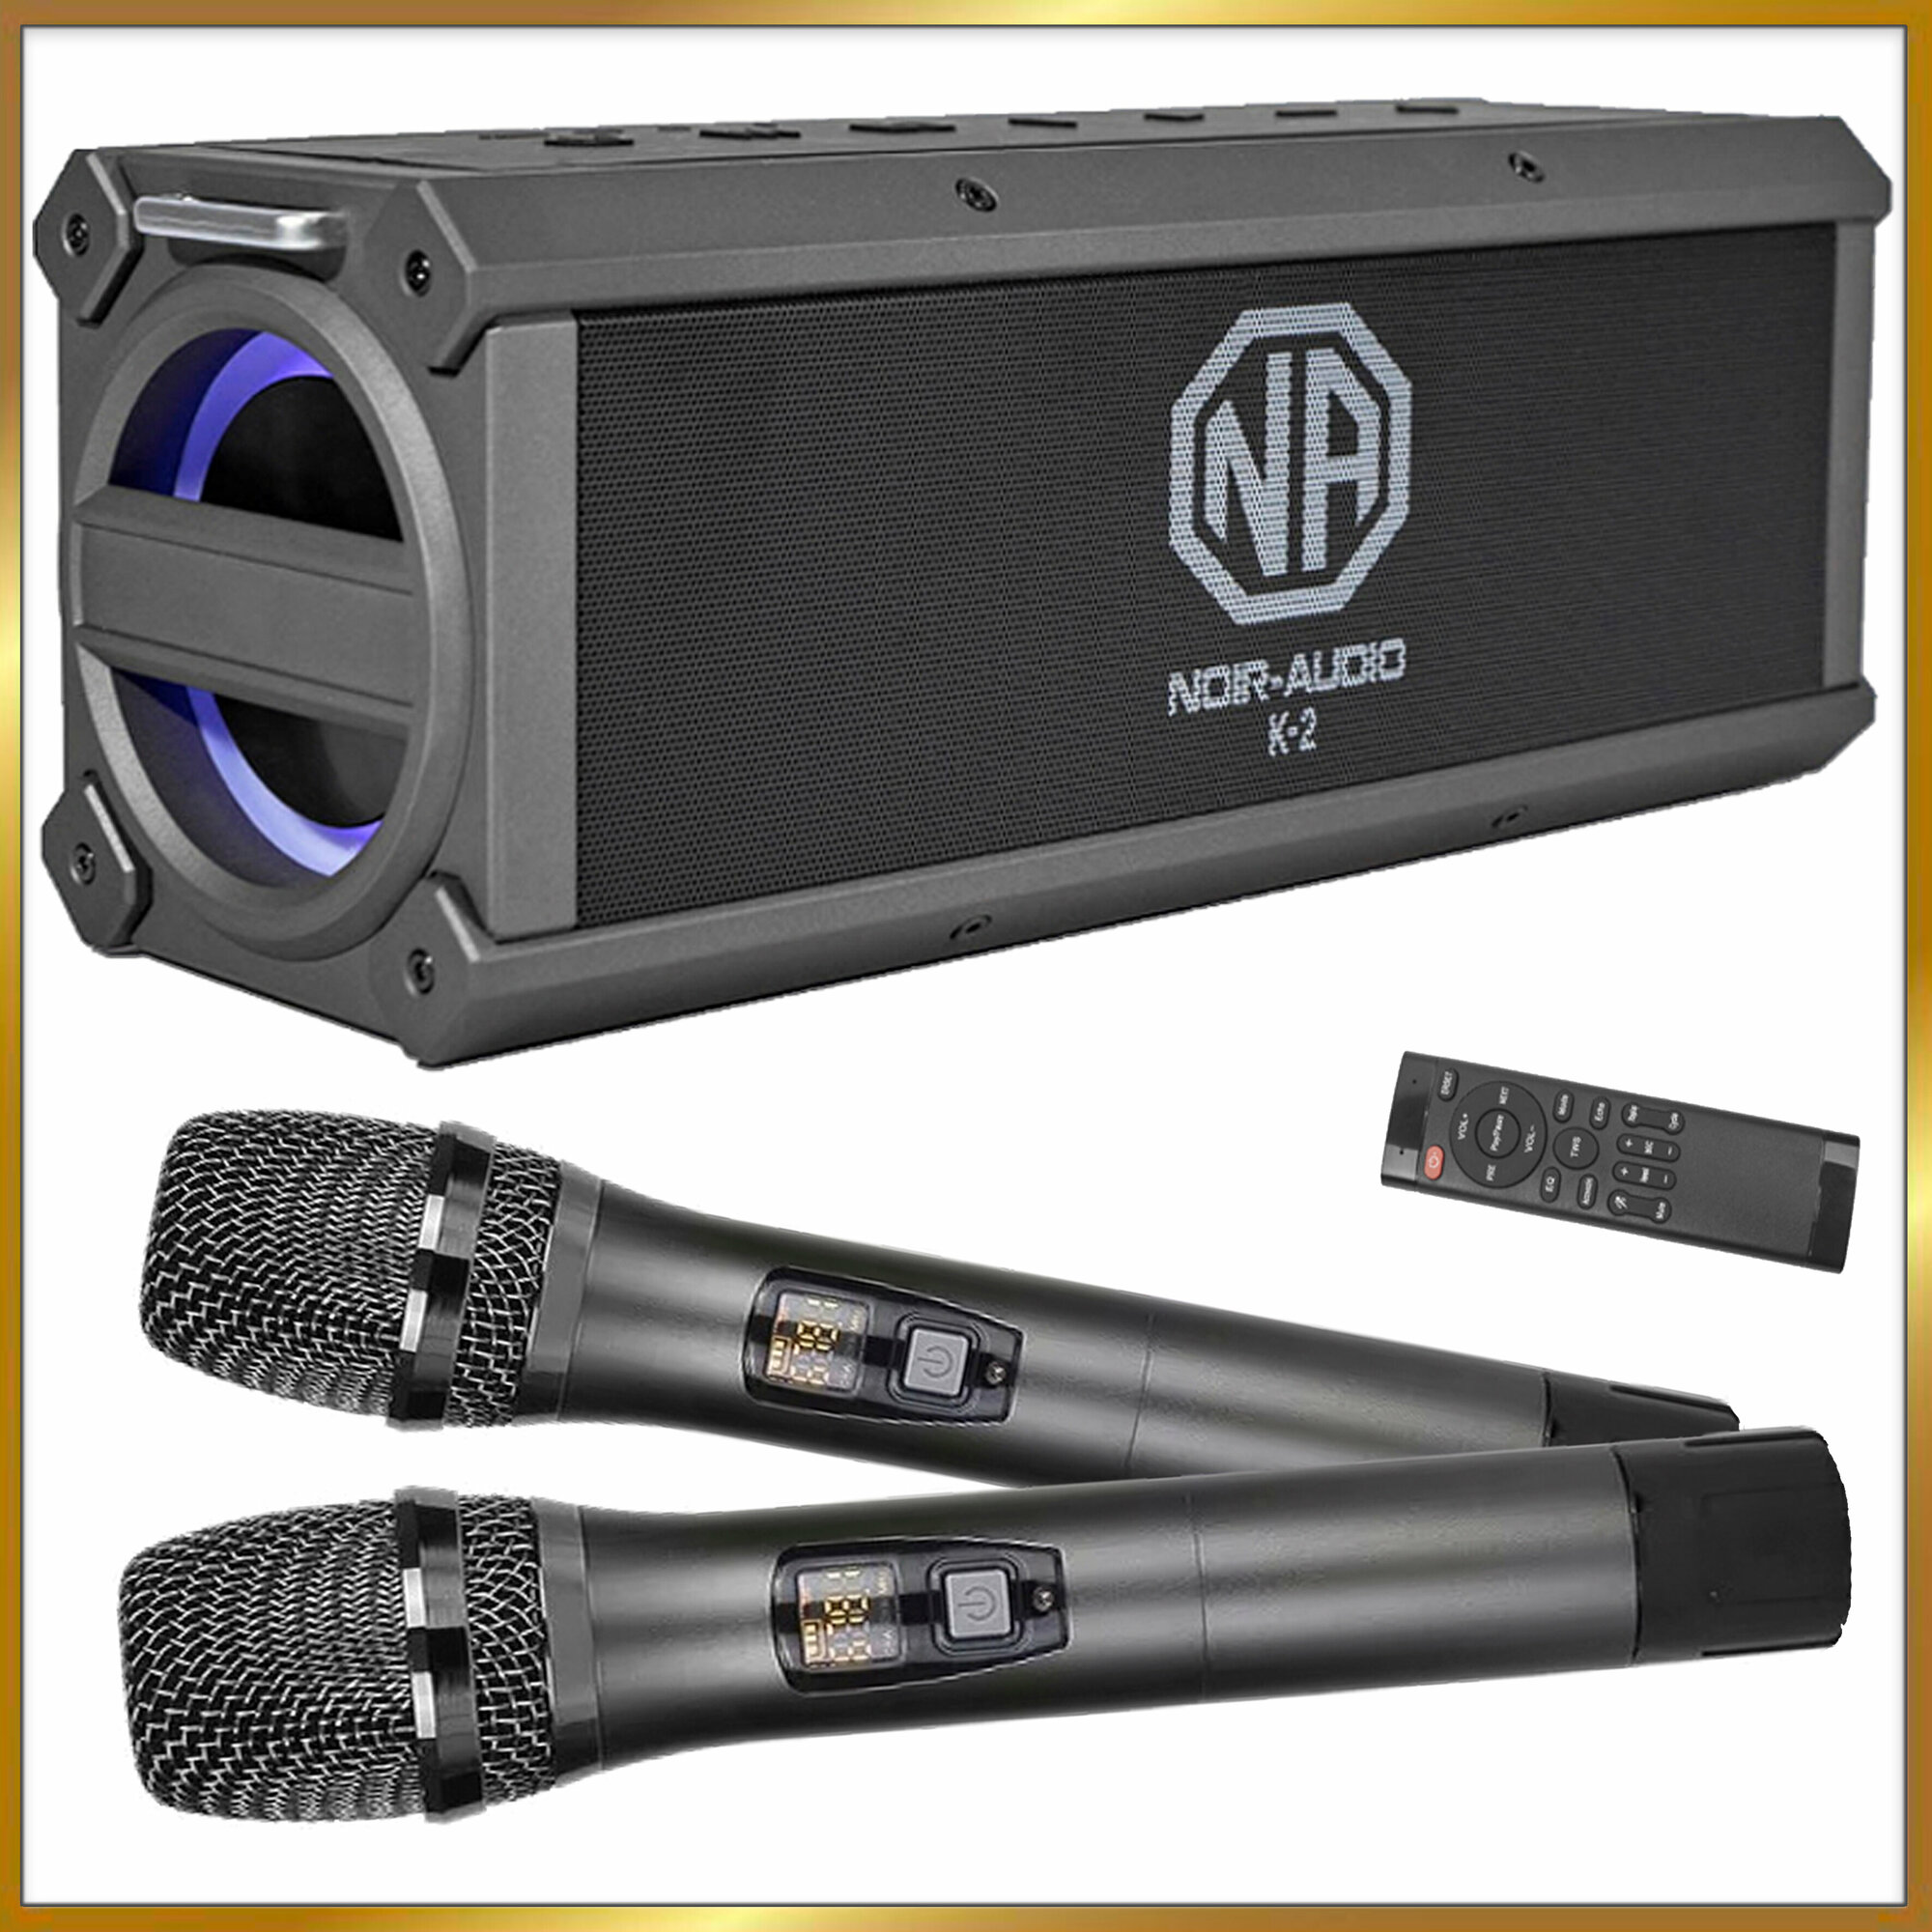 Караоке-система Noir-audio K-2 с двумя микрофонами и функцией Bluetooth